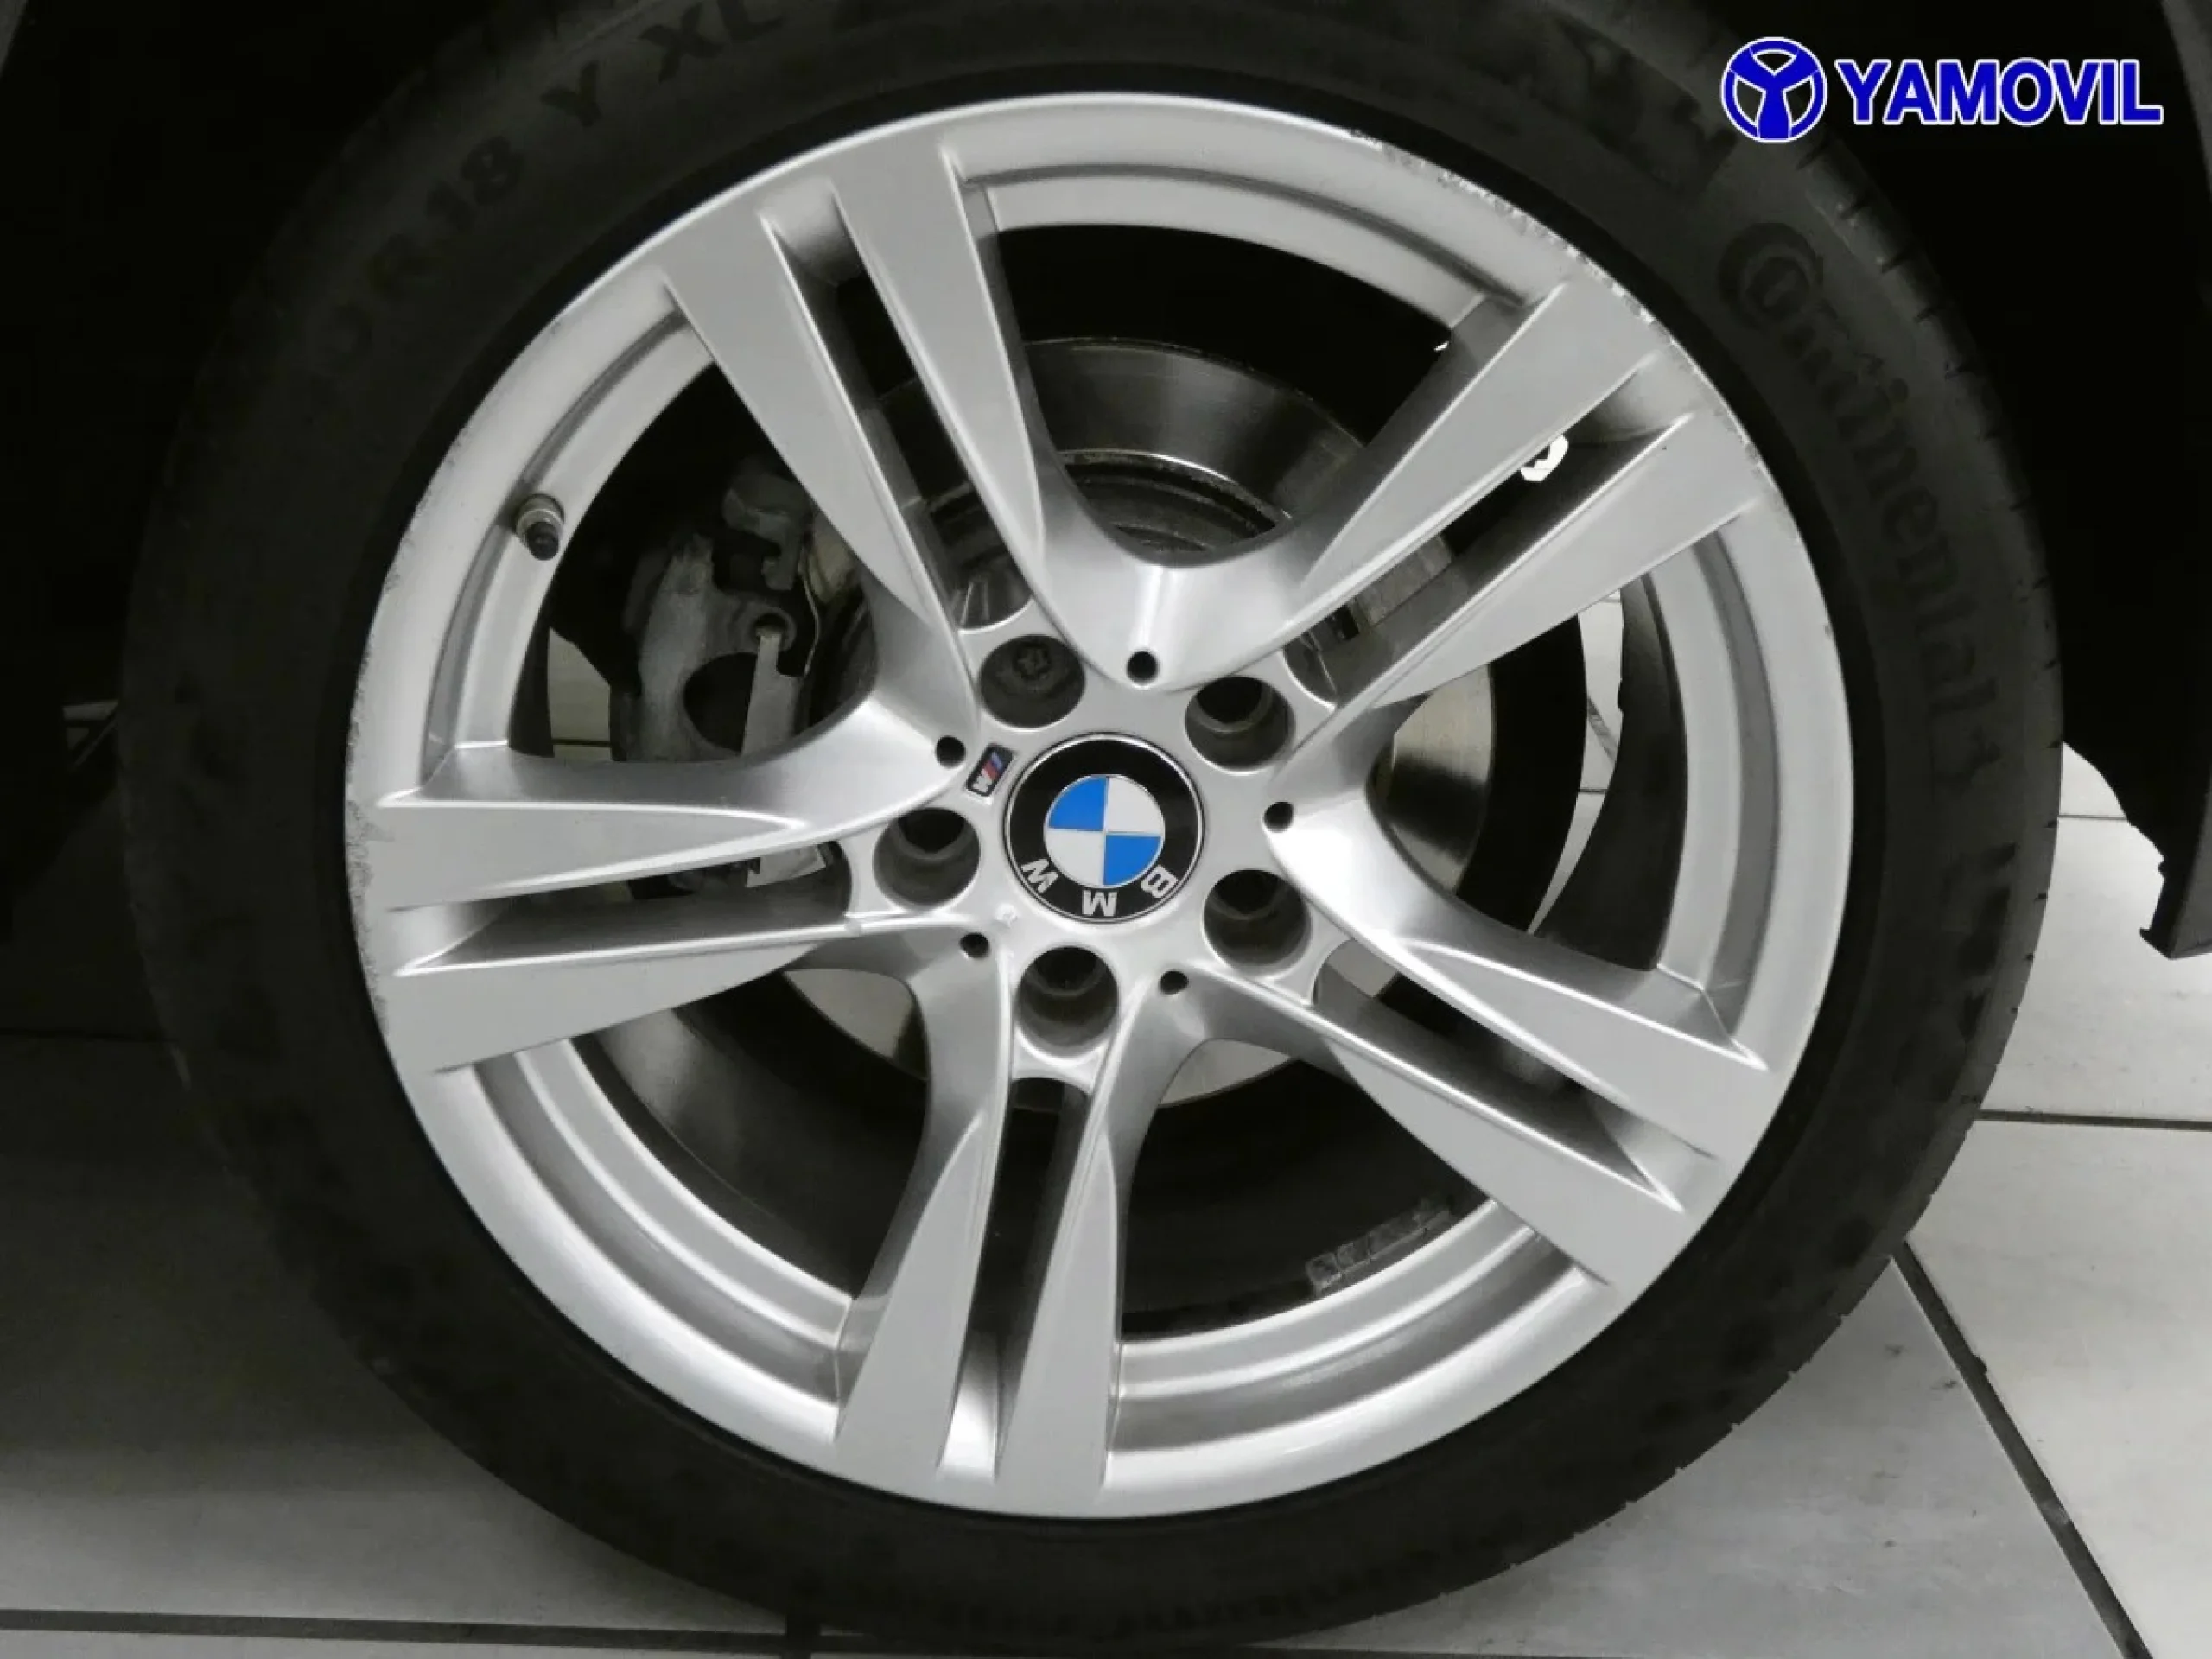 BMW X1 sDrive18d 105 kW (143 CV) - Foto 11